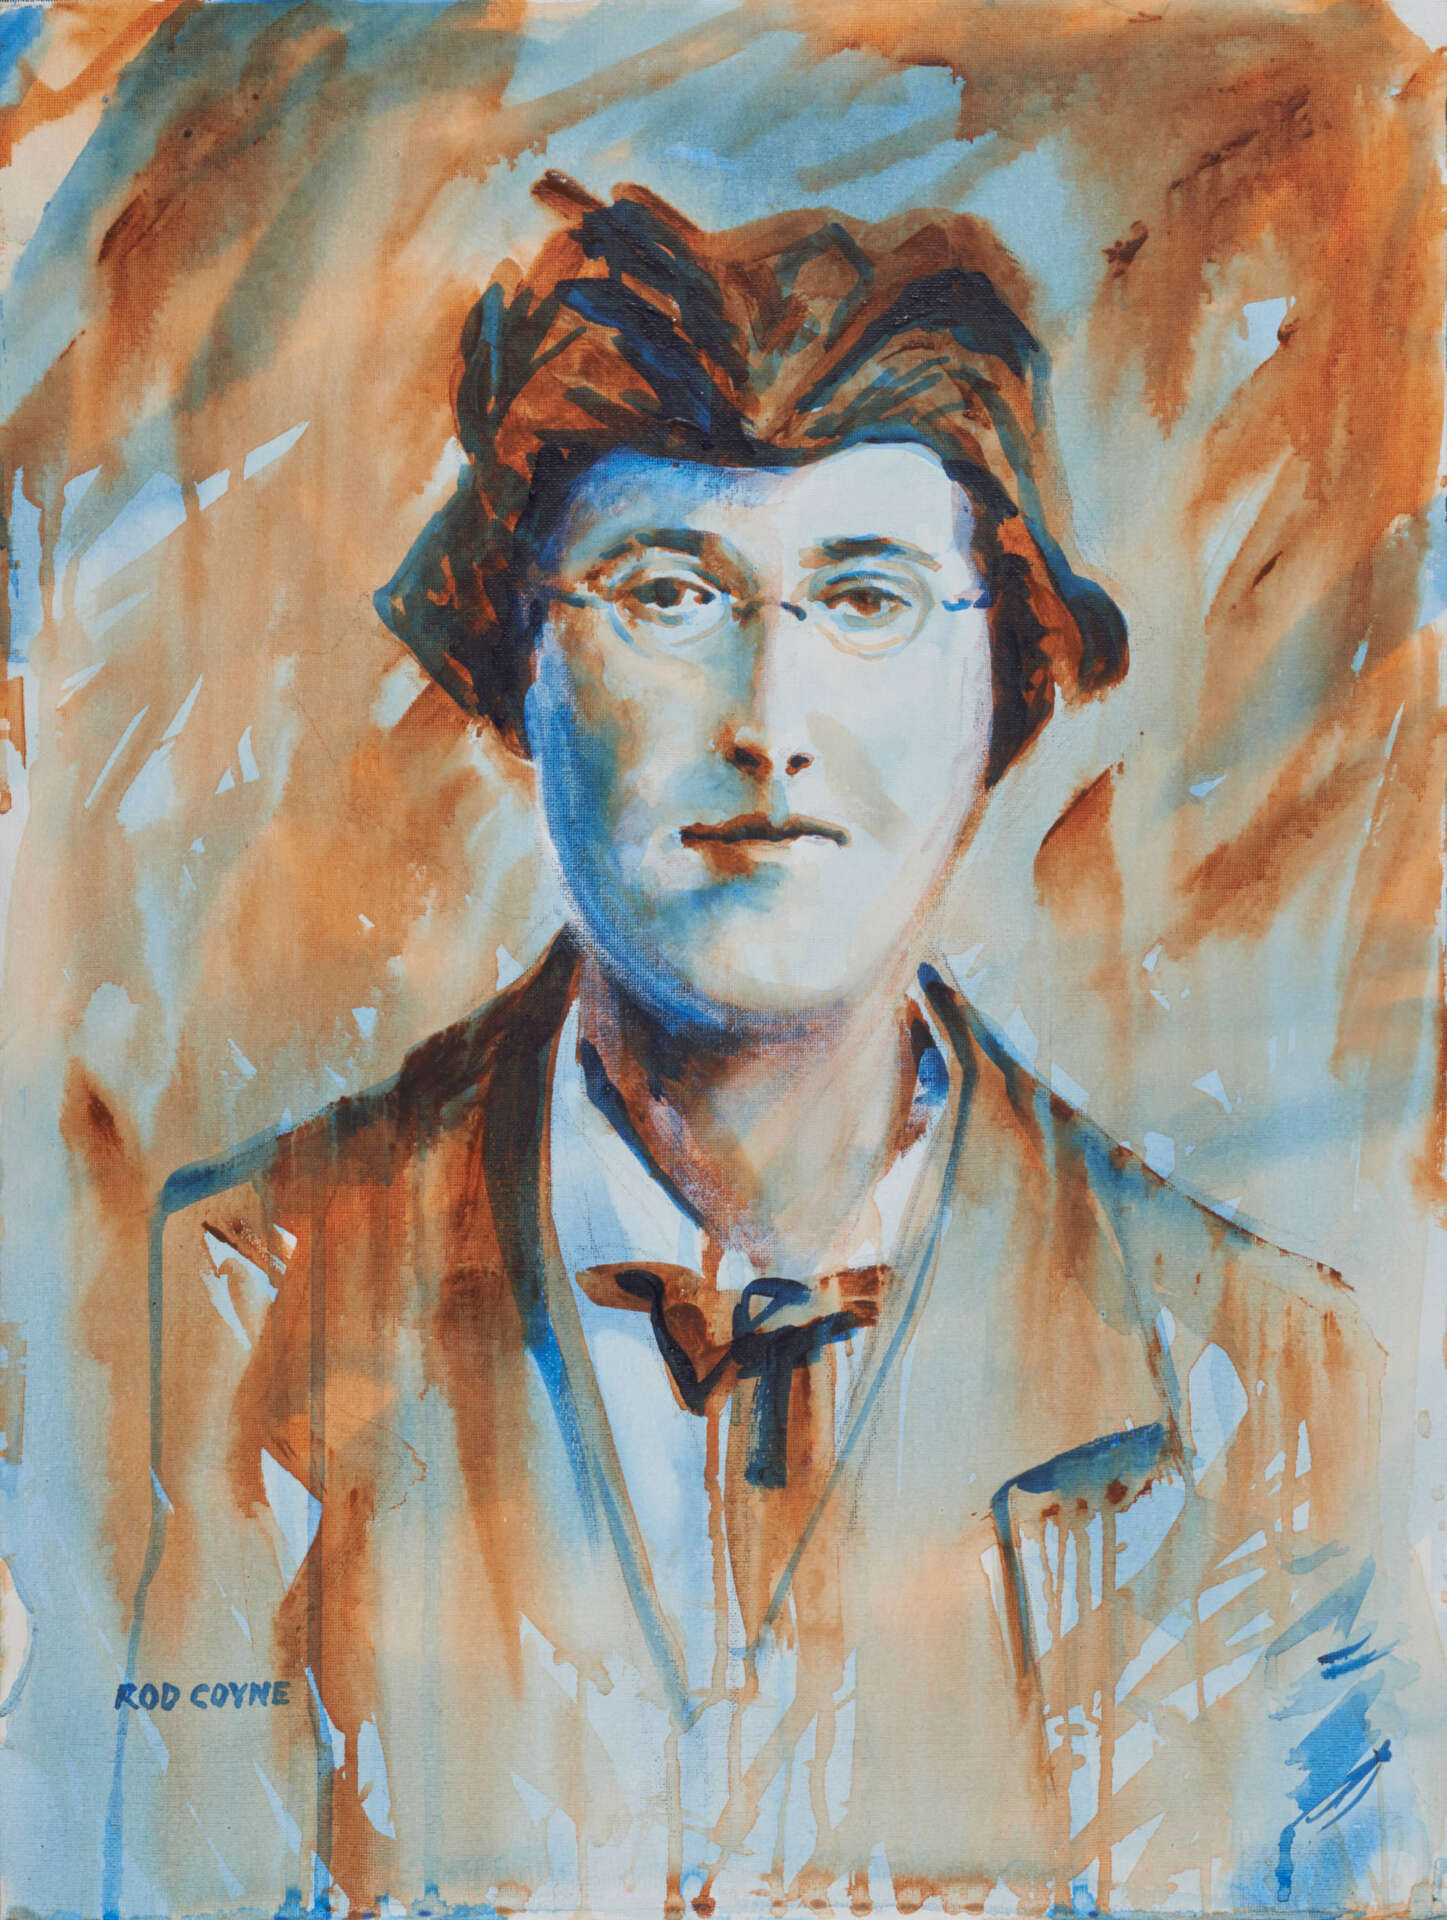 artist rod coyne's portrait "Margaret Skinnider 1916" is shown here.